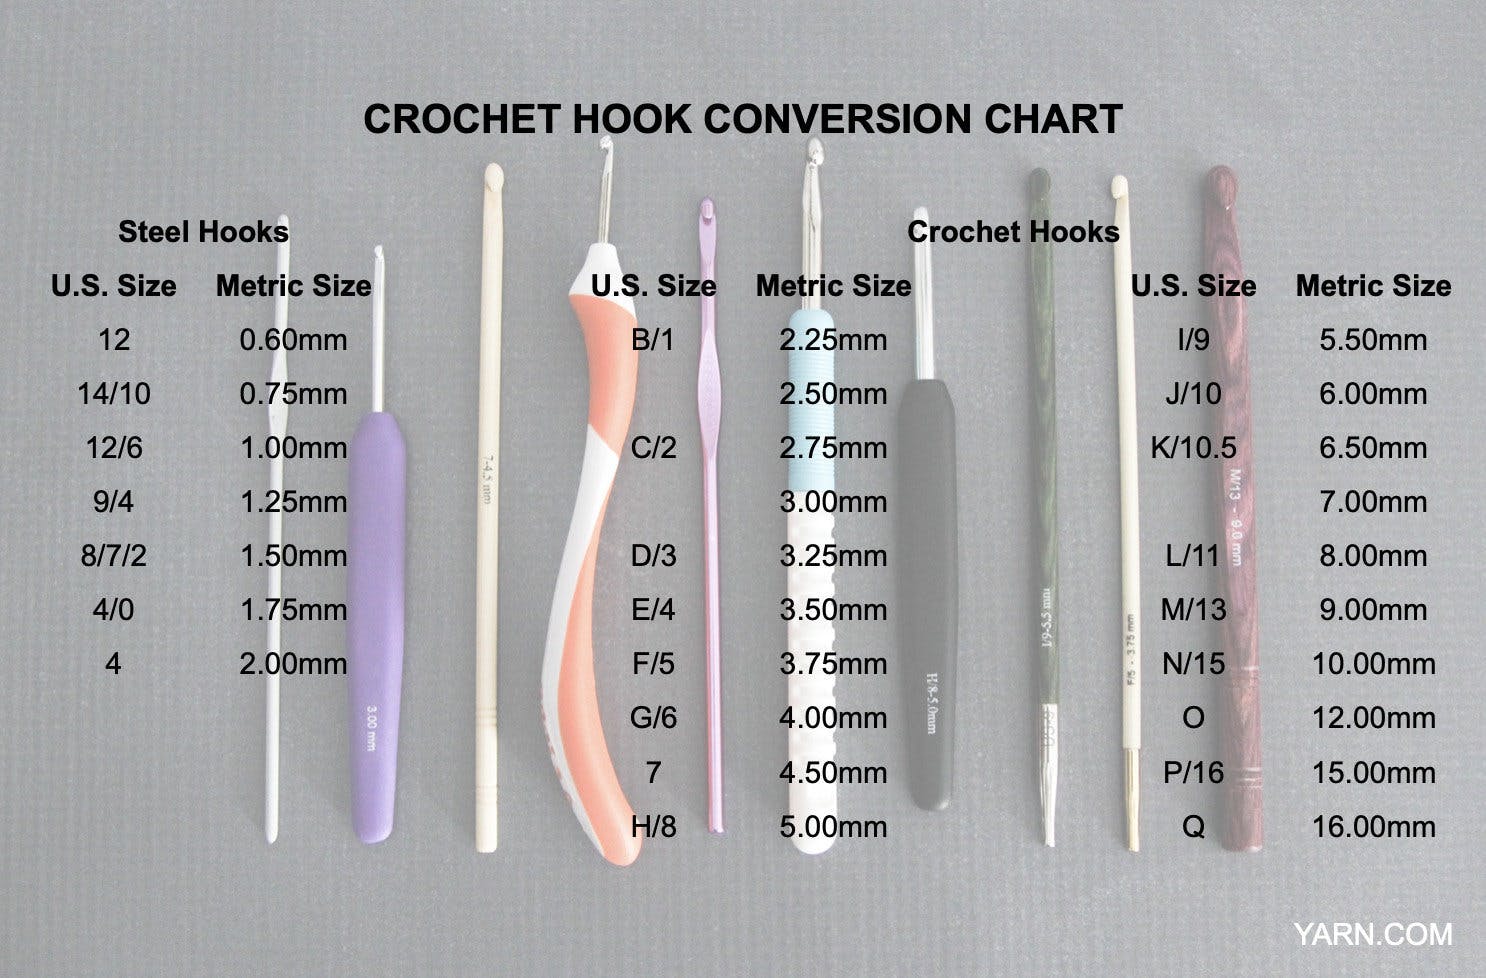 Types of Crochet Hooks